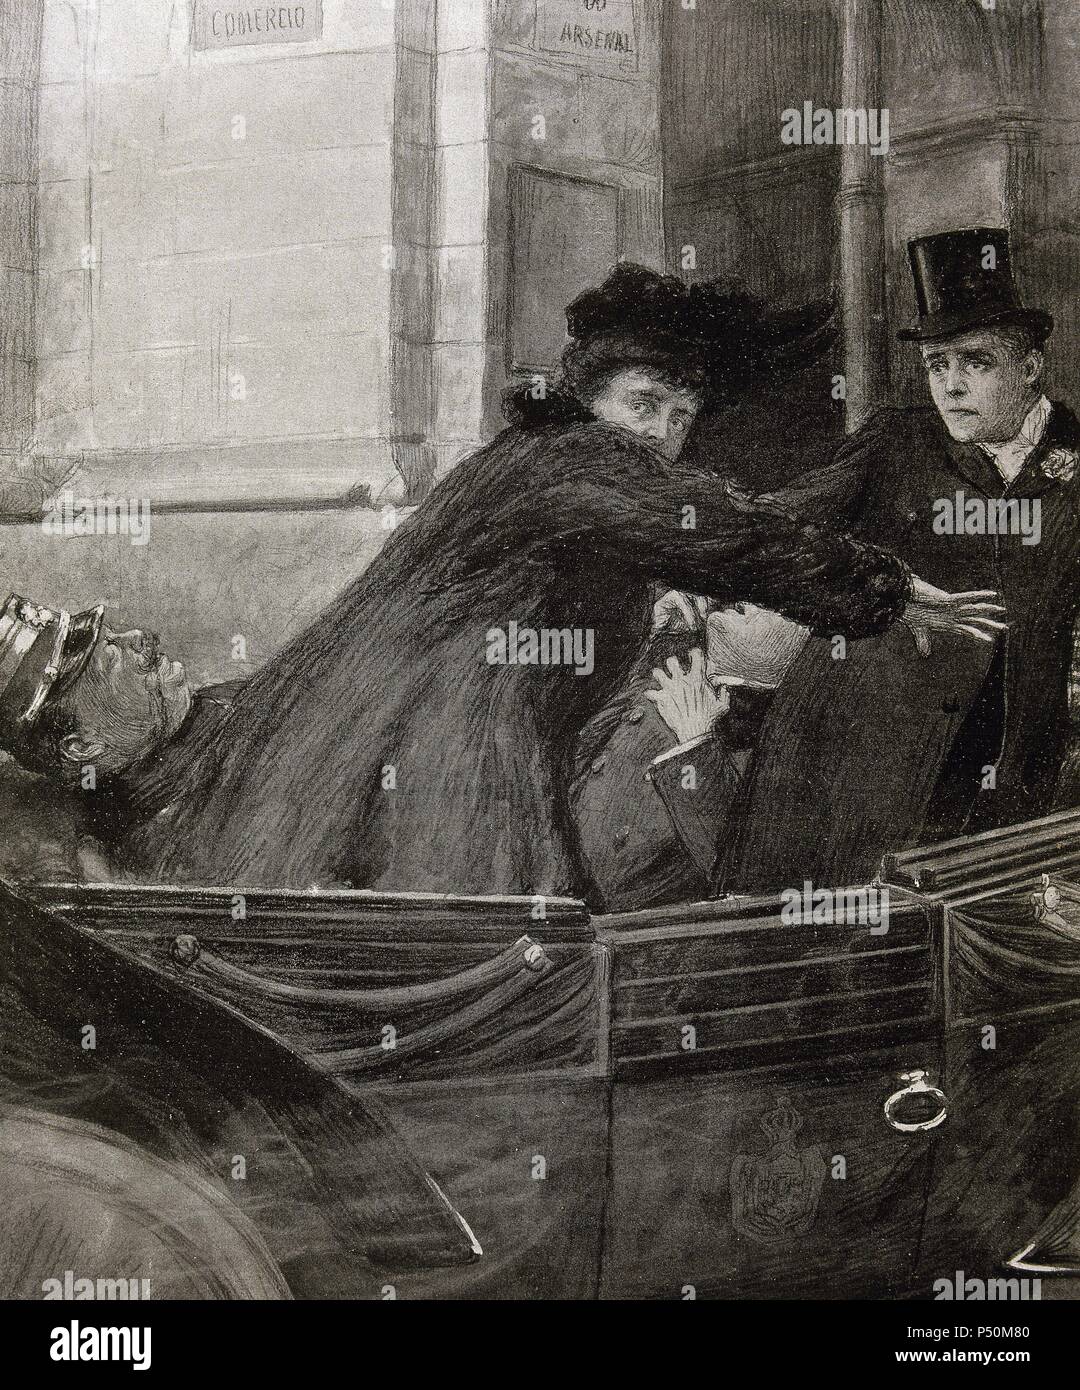 Charles I (1863-1908). Roi de Portugal (1889-1908). Assassinat du roi de Portugal et Luis Filipe, Prince Royal de Portugal, tandis que la Reine Amelia essaie de protéger les victimes. Gravure tirée de '